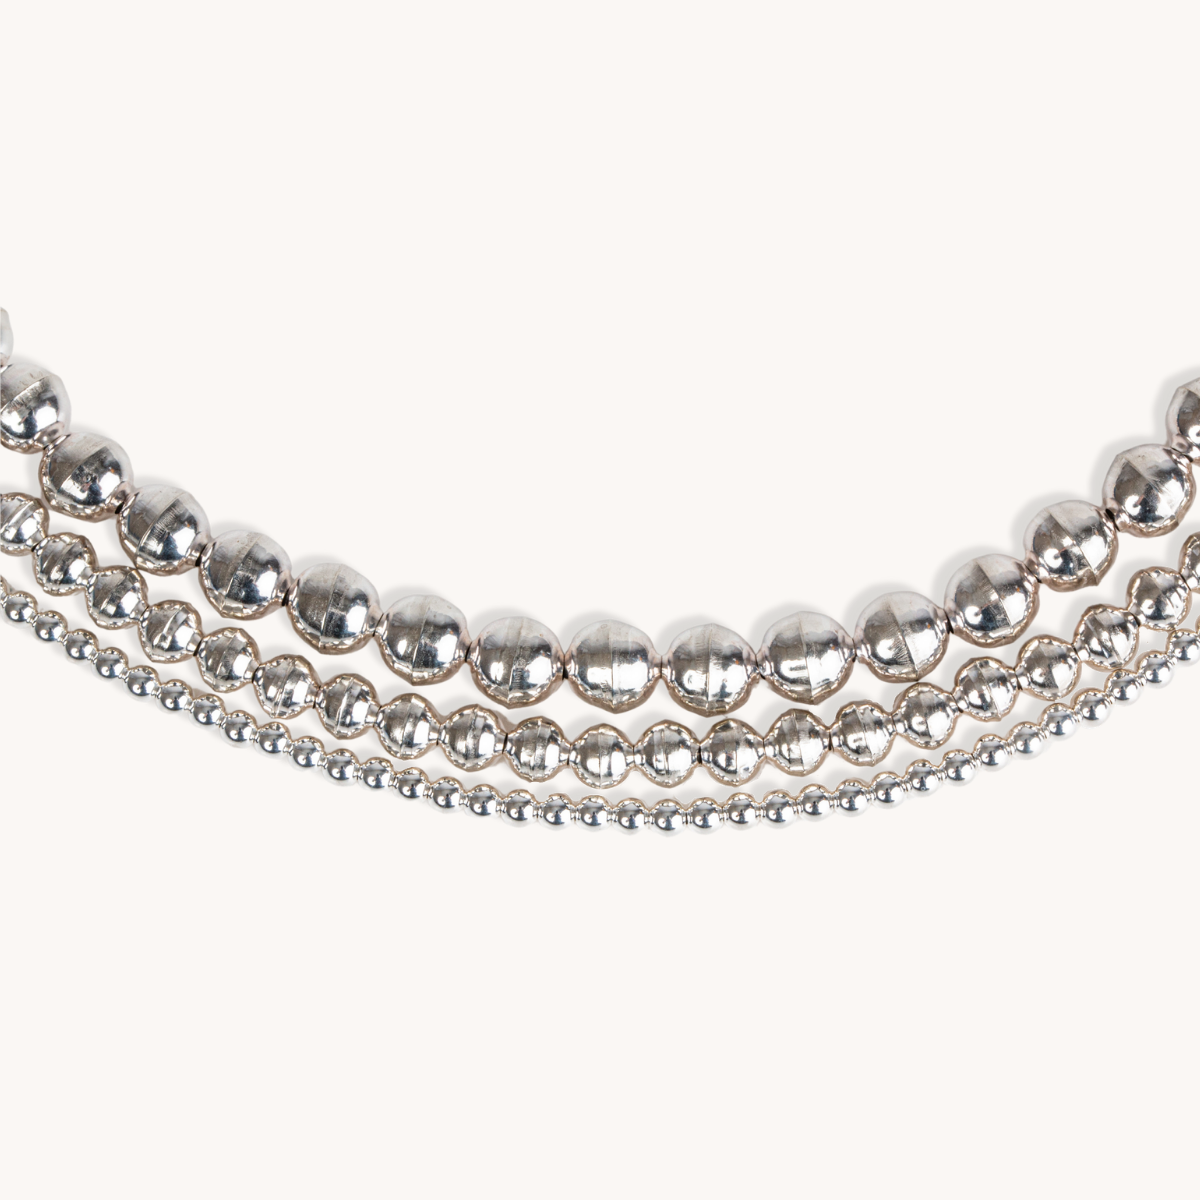 Silver Beads Bracelet by T.Skies Jewelry